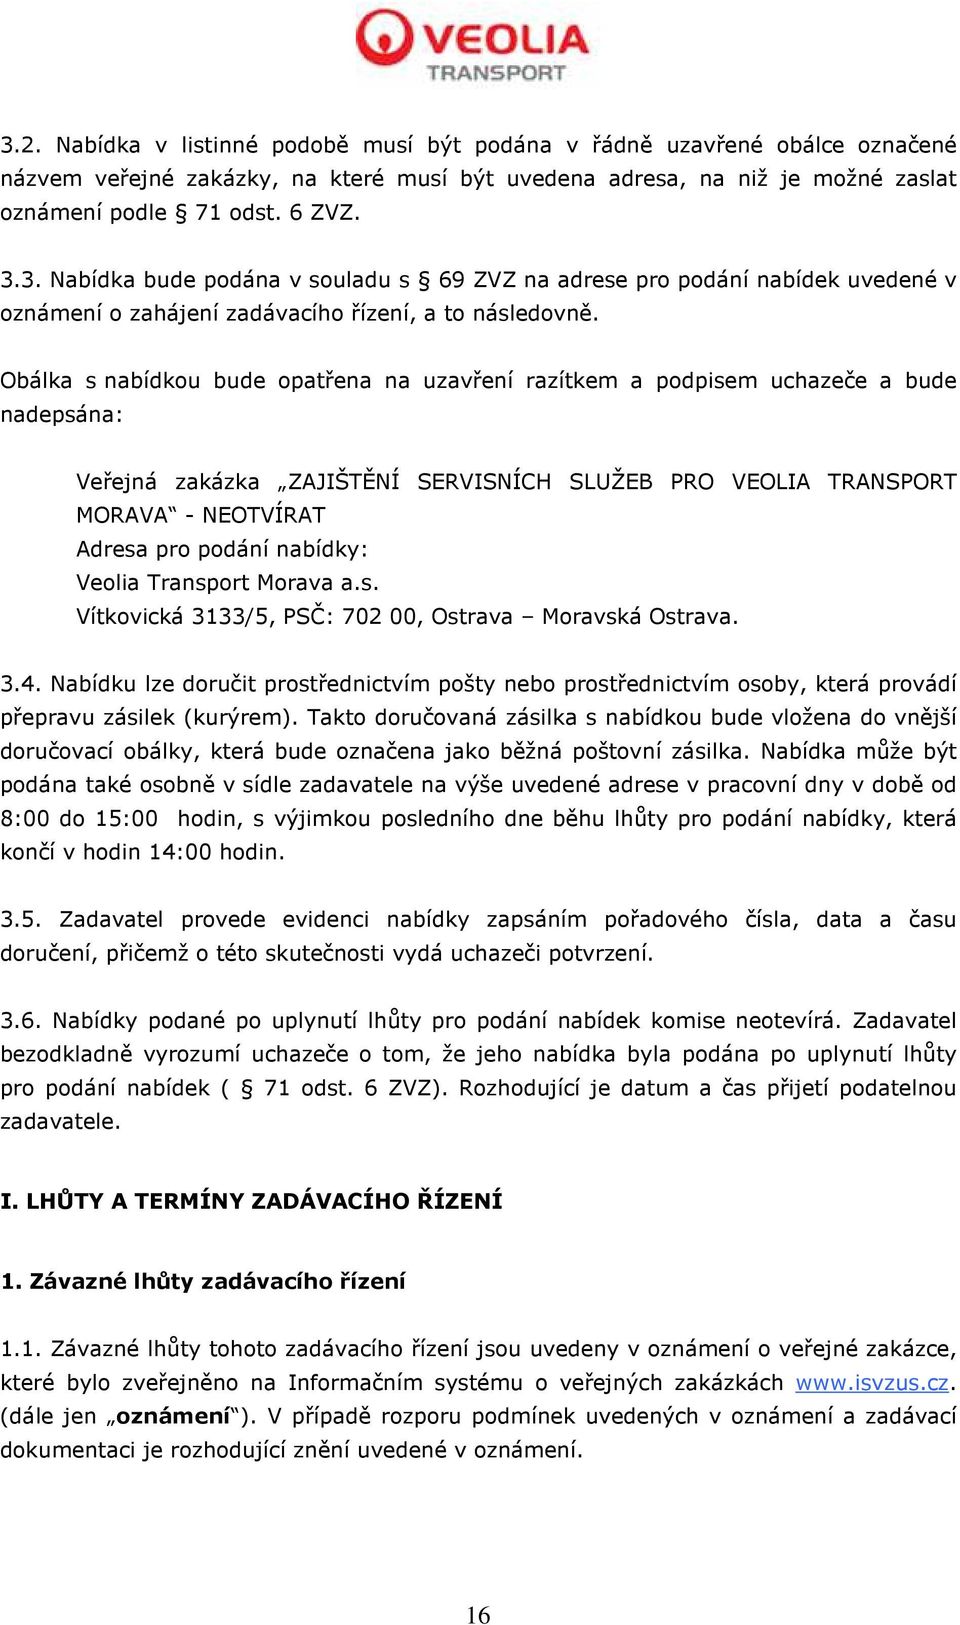 nabídky: Veolia Transport Morava a.s. Vítkovická 3133/5, PSČ: 702 00, Ostrava Moravská Ostrava. 3.4.